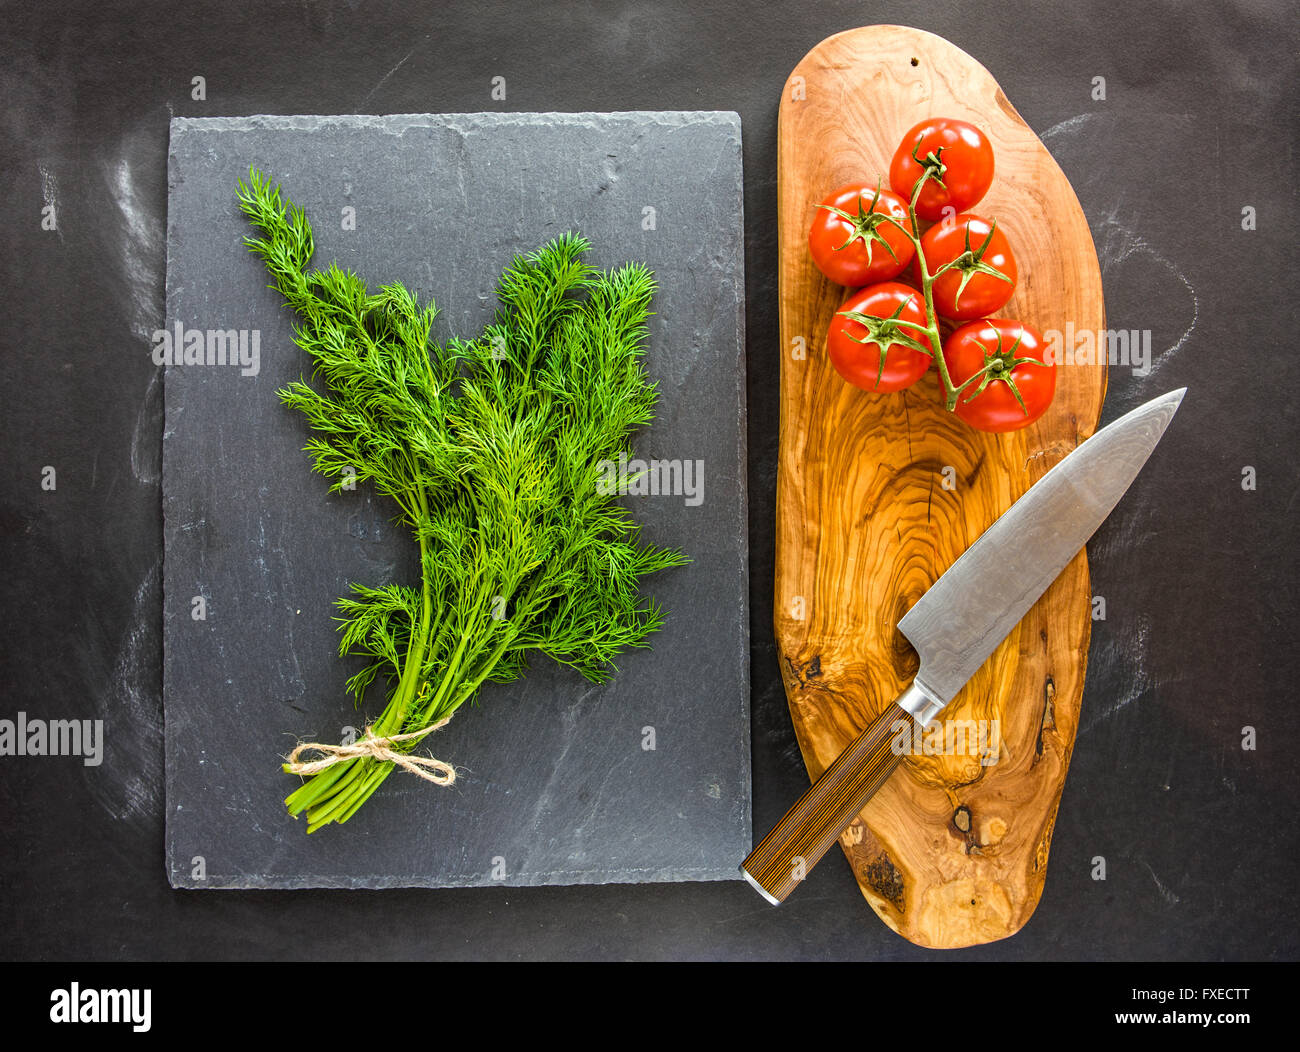 Bund Dill auf Schiefer Teller mit Tomaten auf Seite. Stockfoto